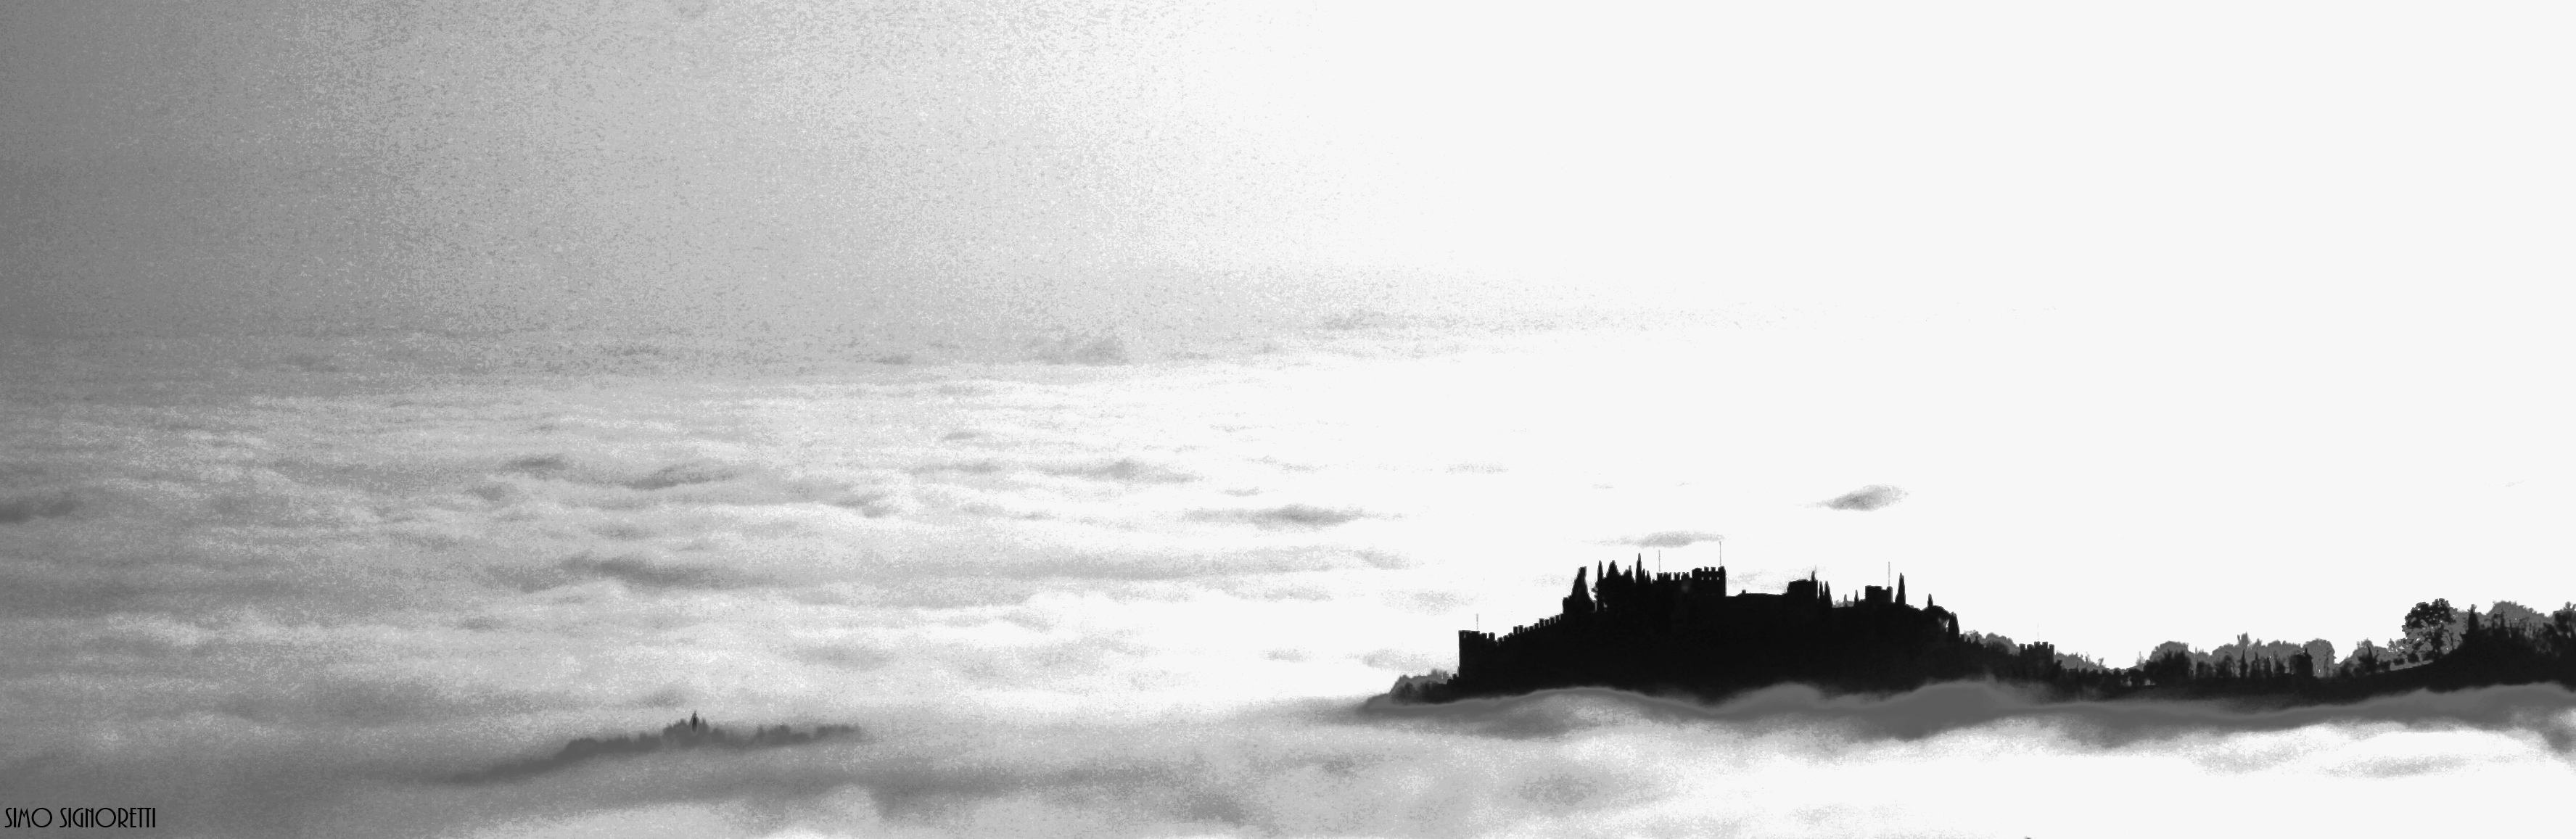 castello di marostica tra la nebbia...